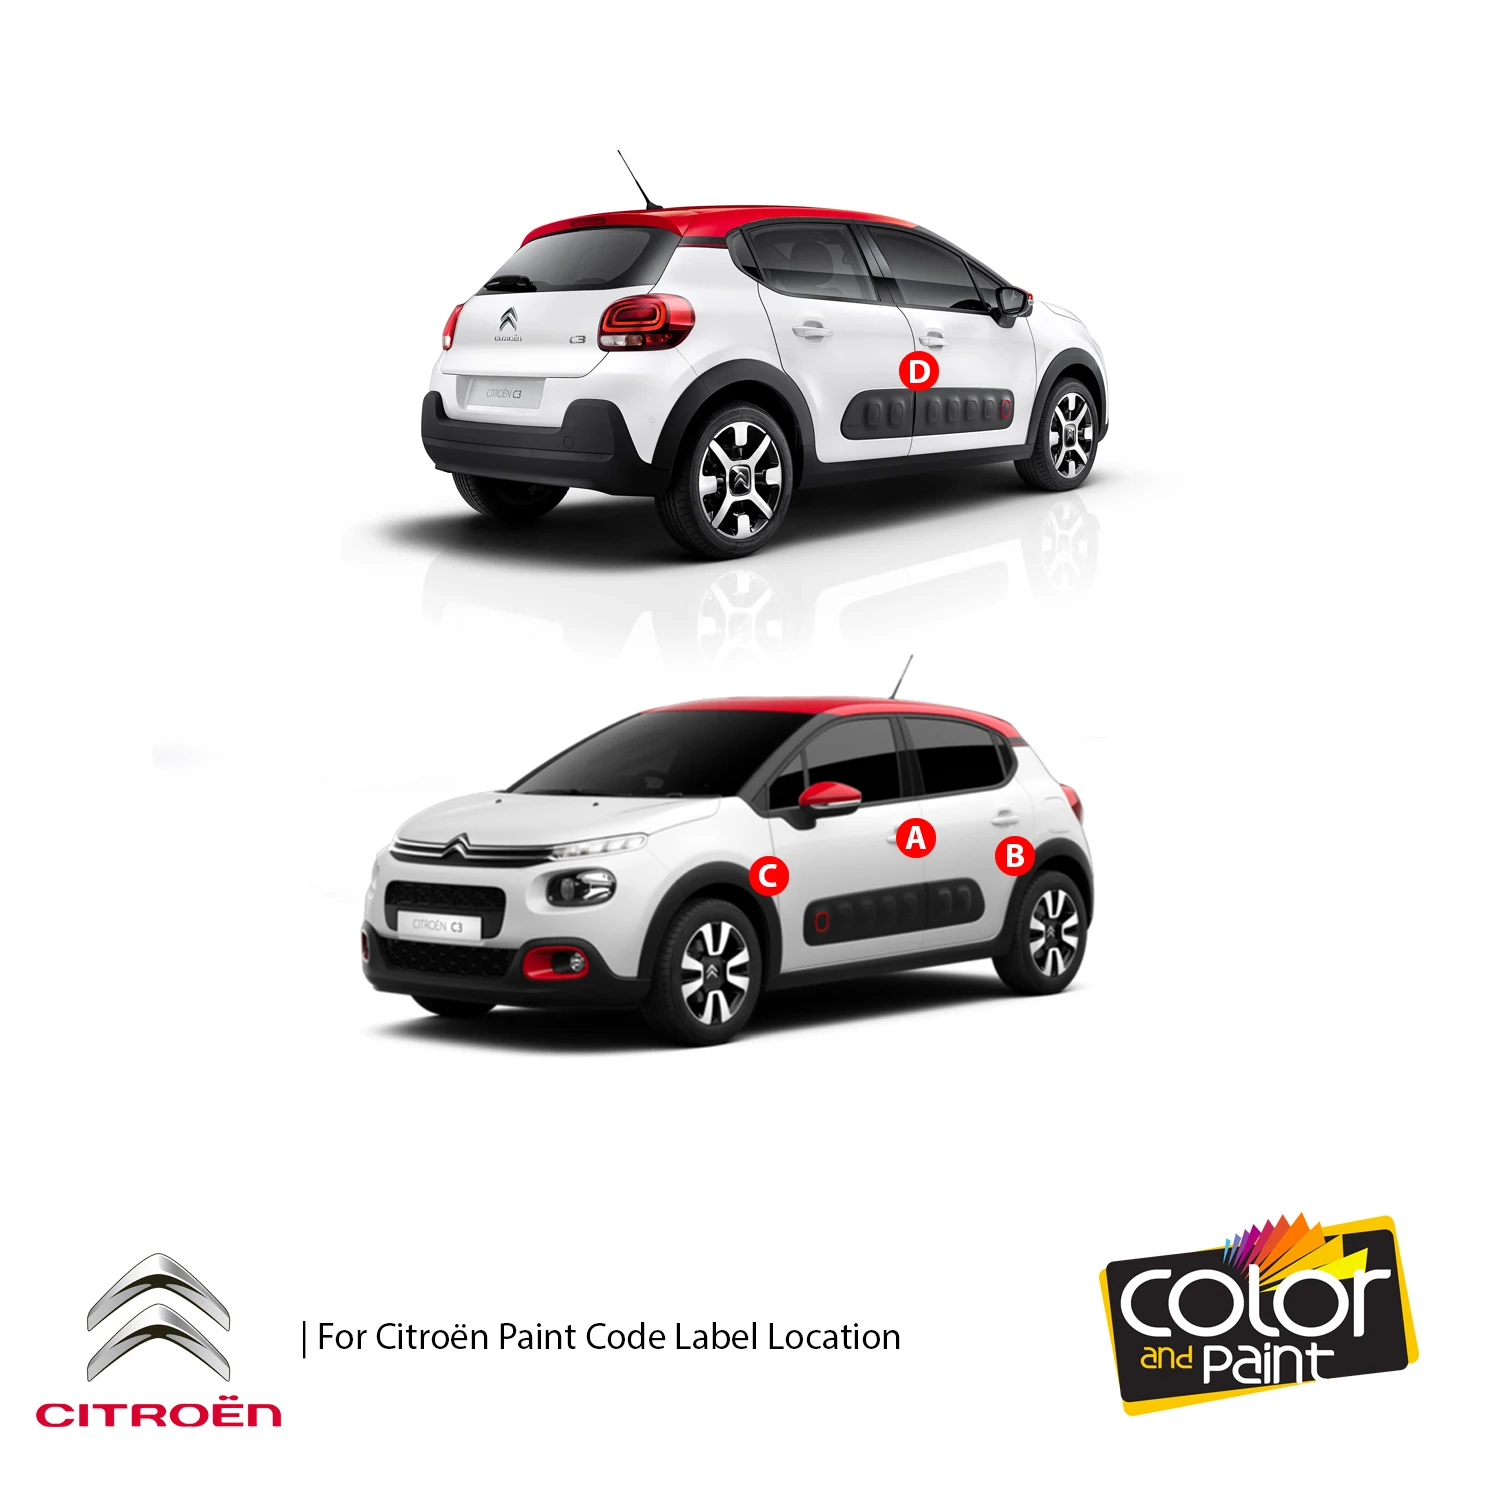 

Color and Paint for Citroen Automotive Touch Up Paint - BLEU MONTEBELLO NACRE - 5L - Paint Scratch Repair, exact Match